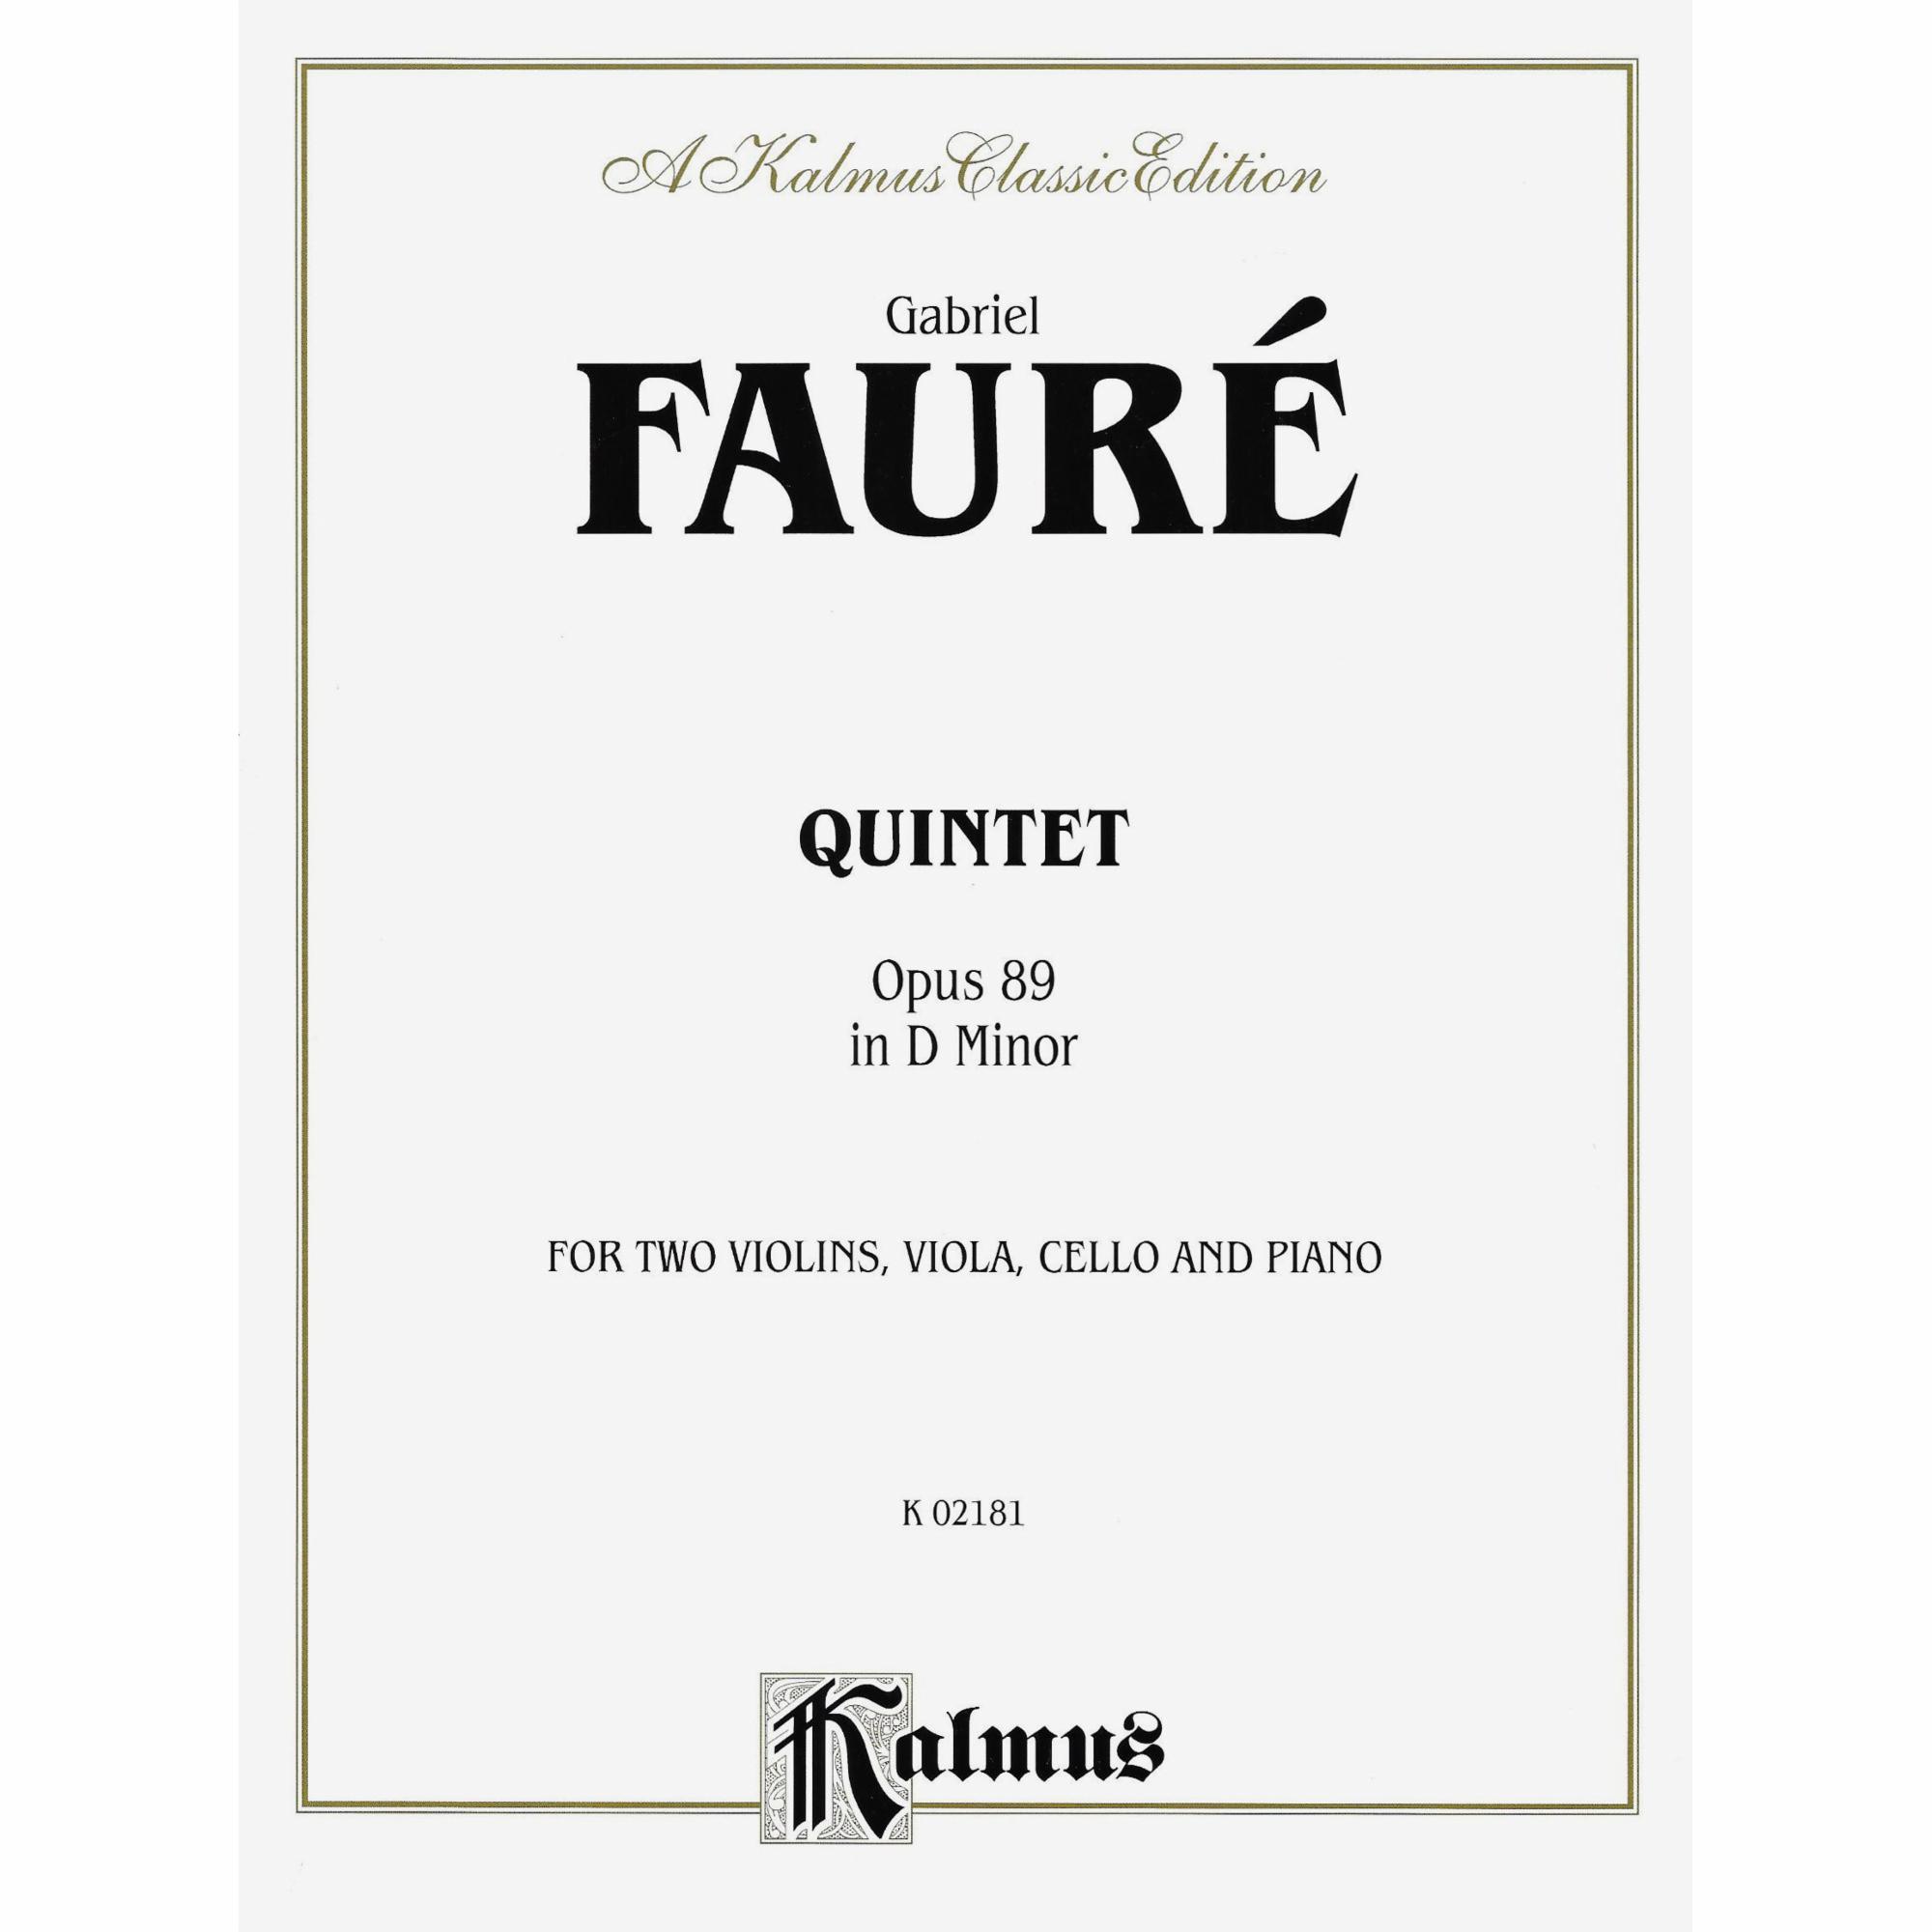 Faure -- Piano Quintet in D Minor, Op. 89